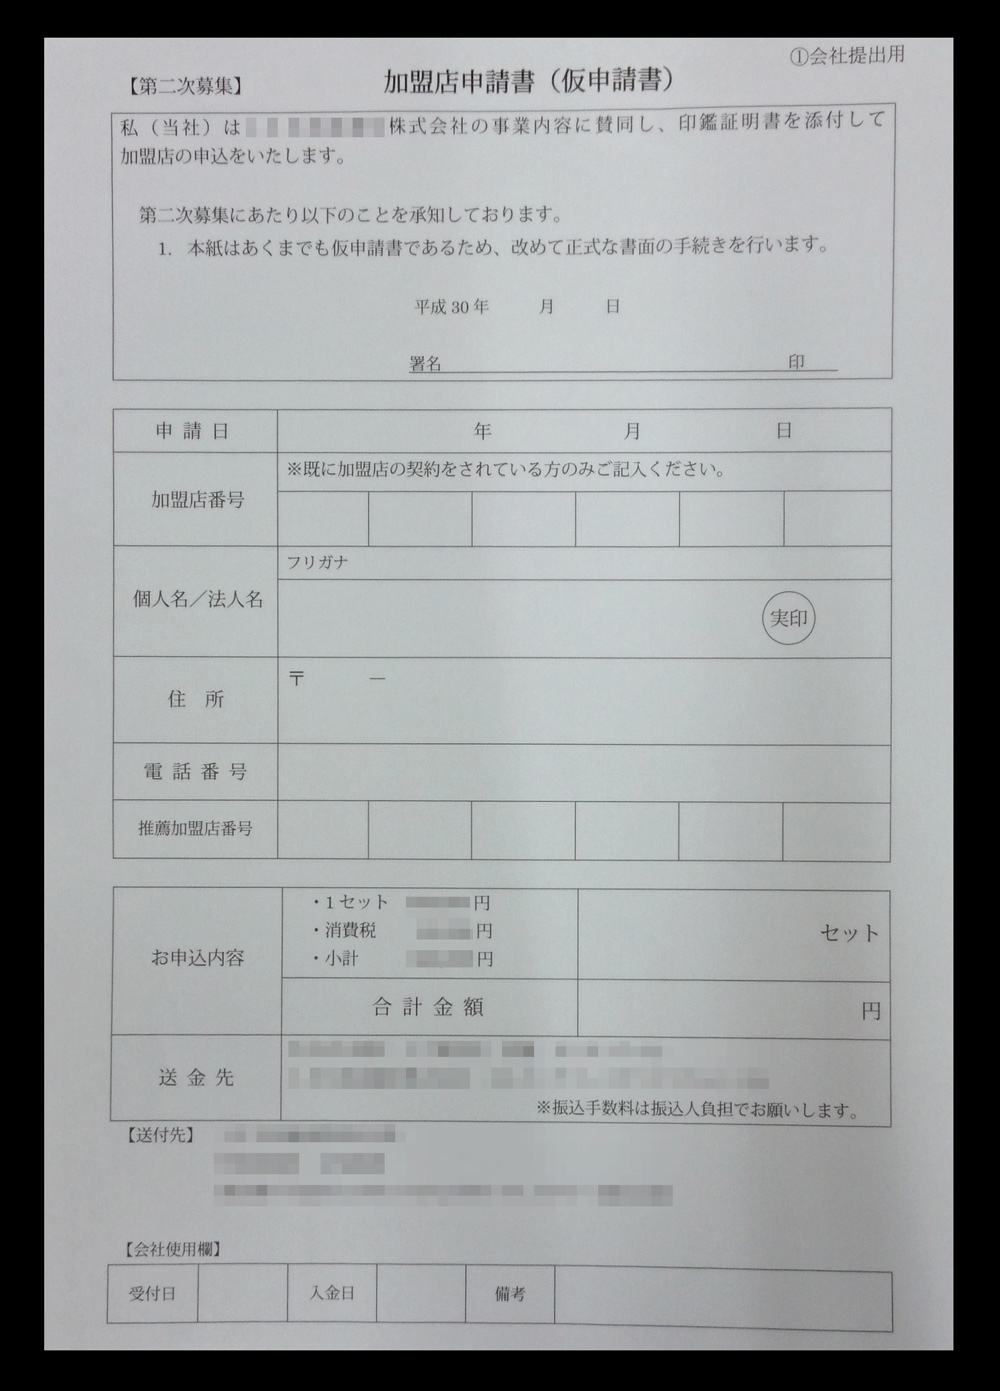 通信機器販売業で使用する加盟店申請書(2枚複写)作成実績